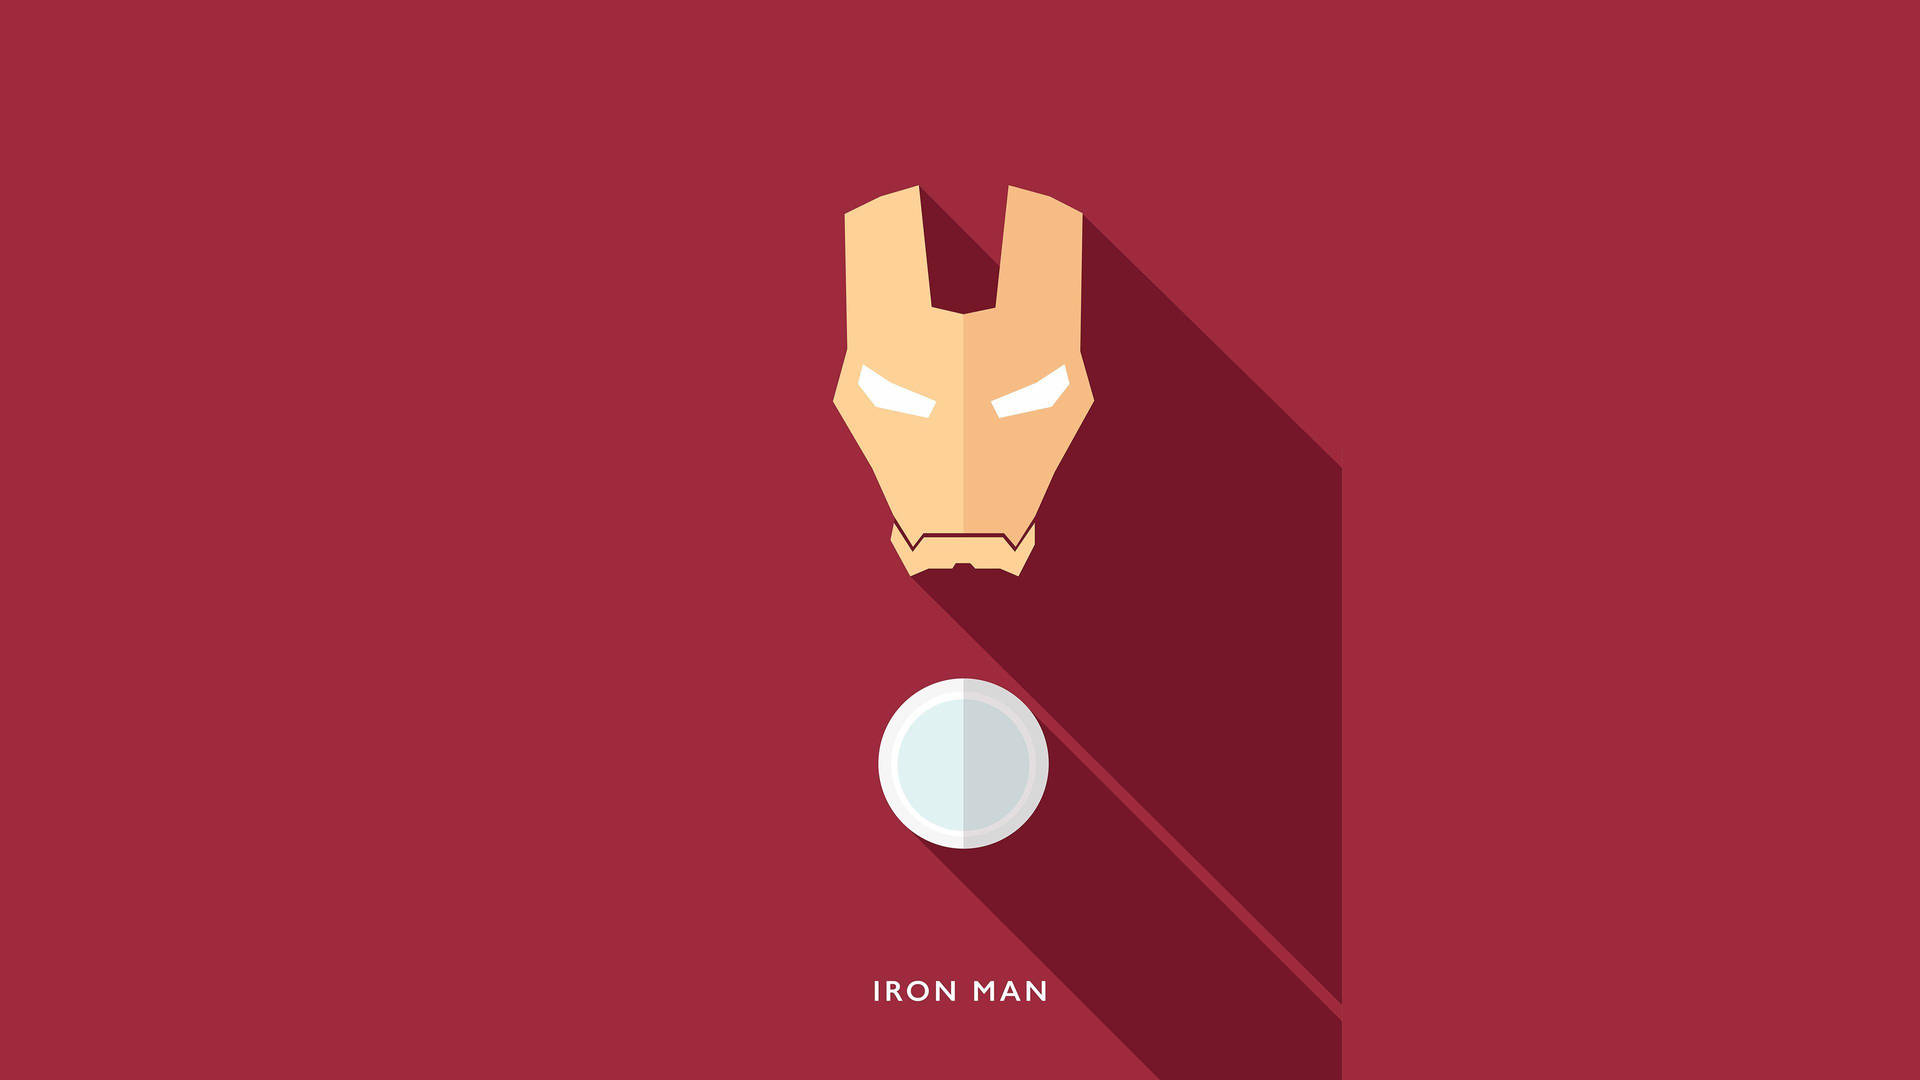 Diseñográfico Minimalista De Iron Man, El Superhéroe. Fondo de pantalla